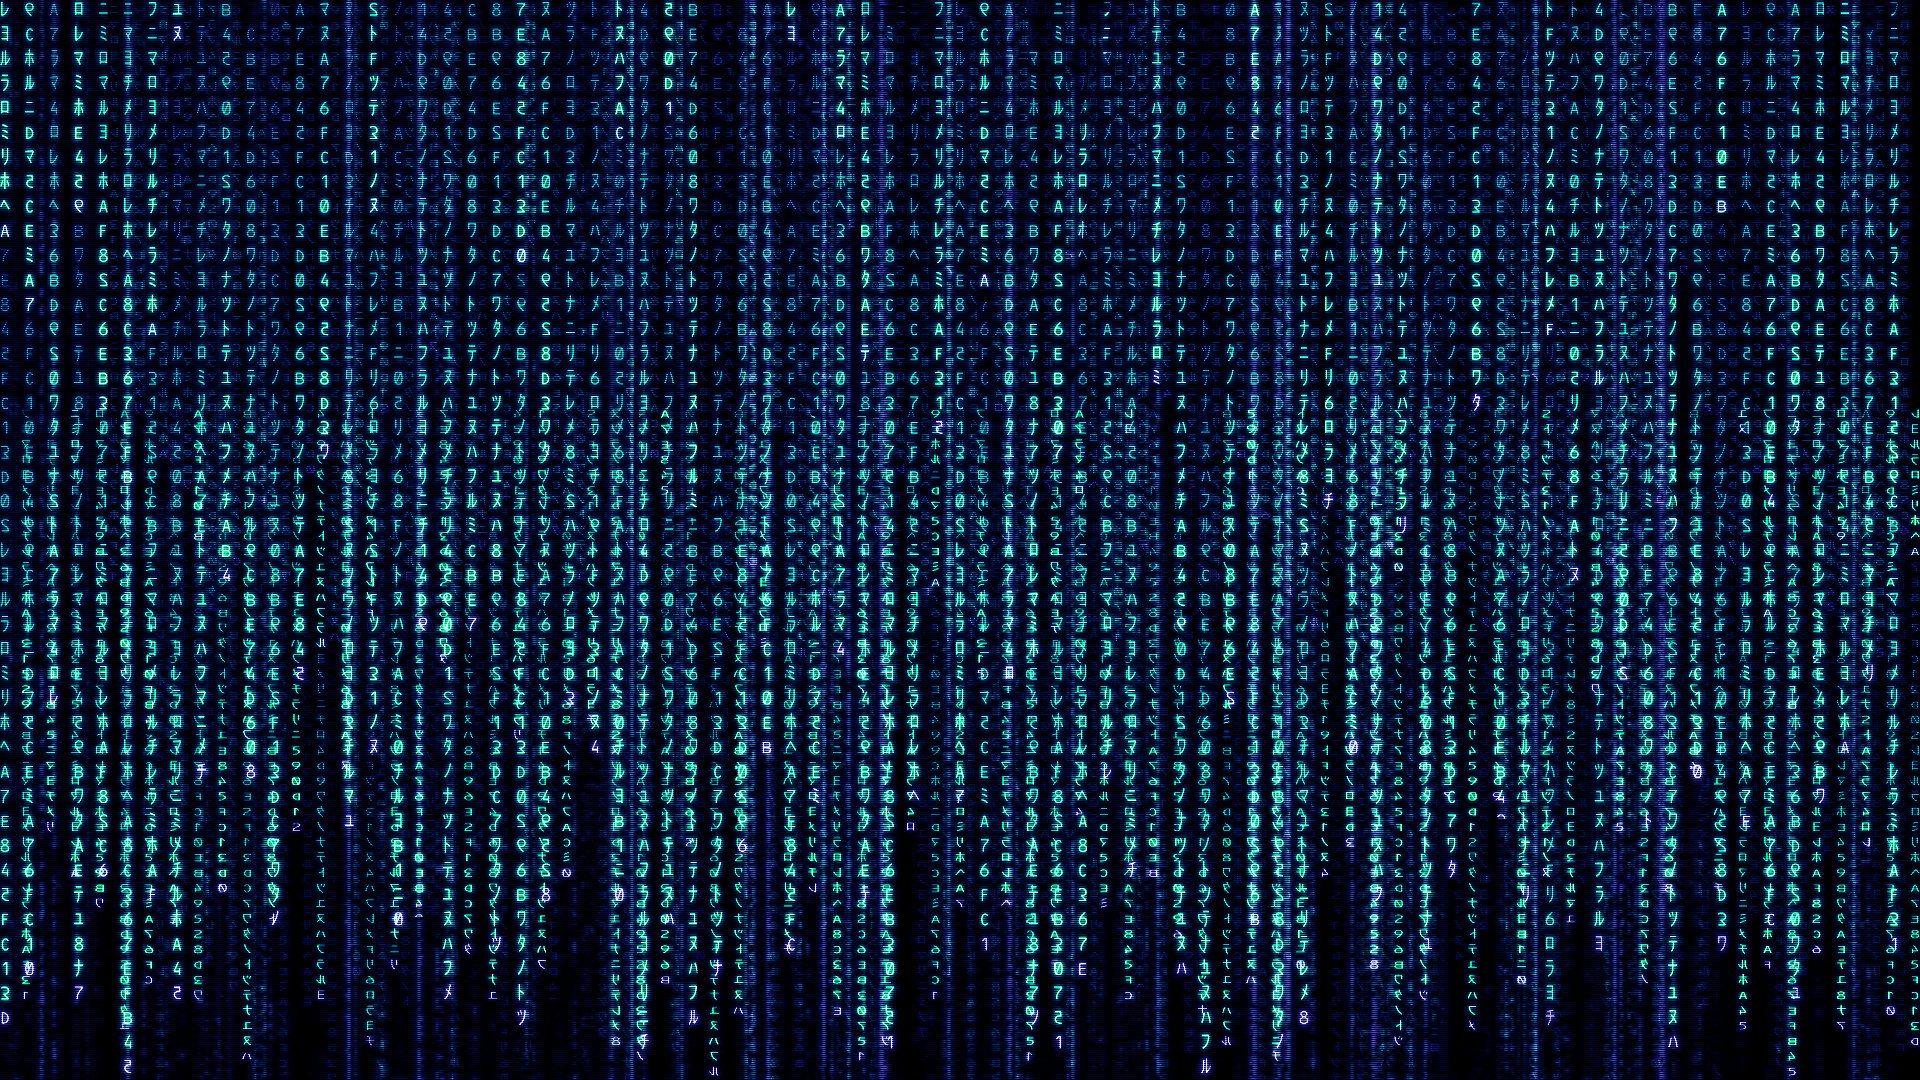 Download the Blue Matrix Code Wallpaper, Blue Matrix Code iPhone